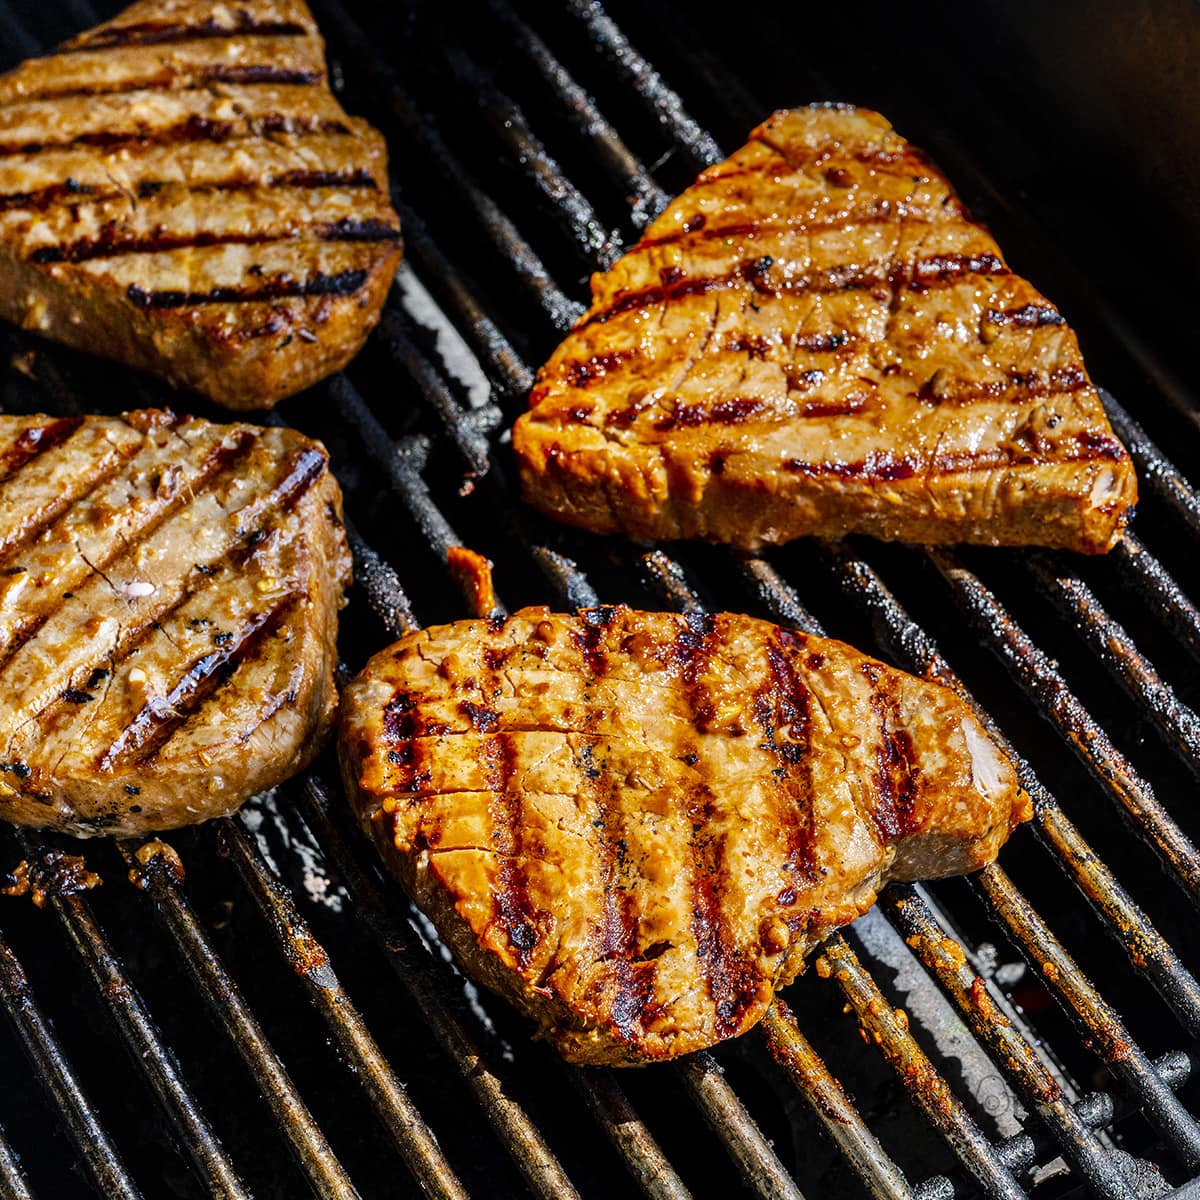 Tuna steak on the grill.